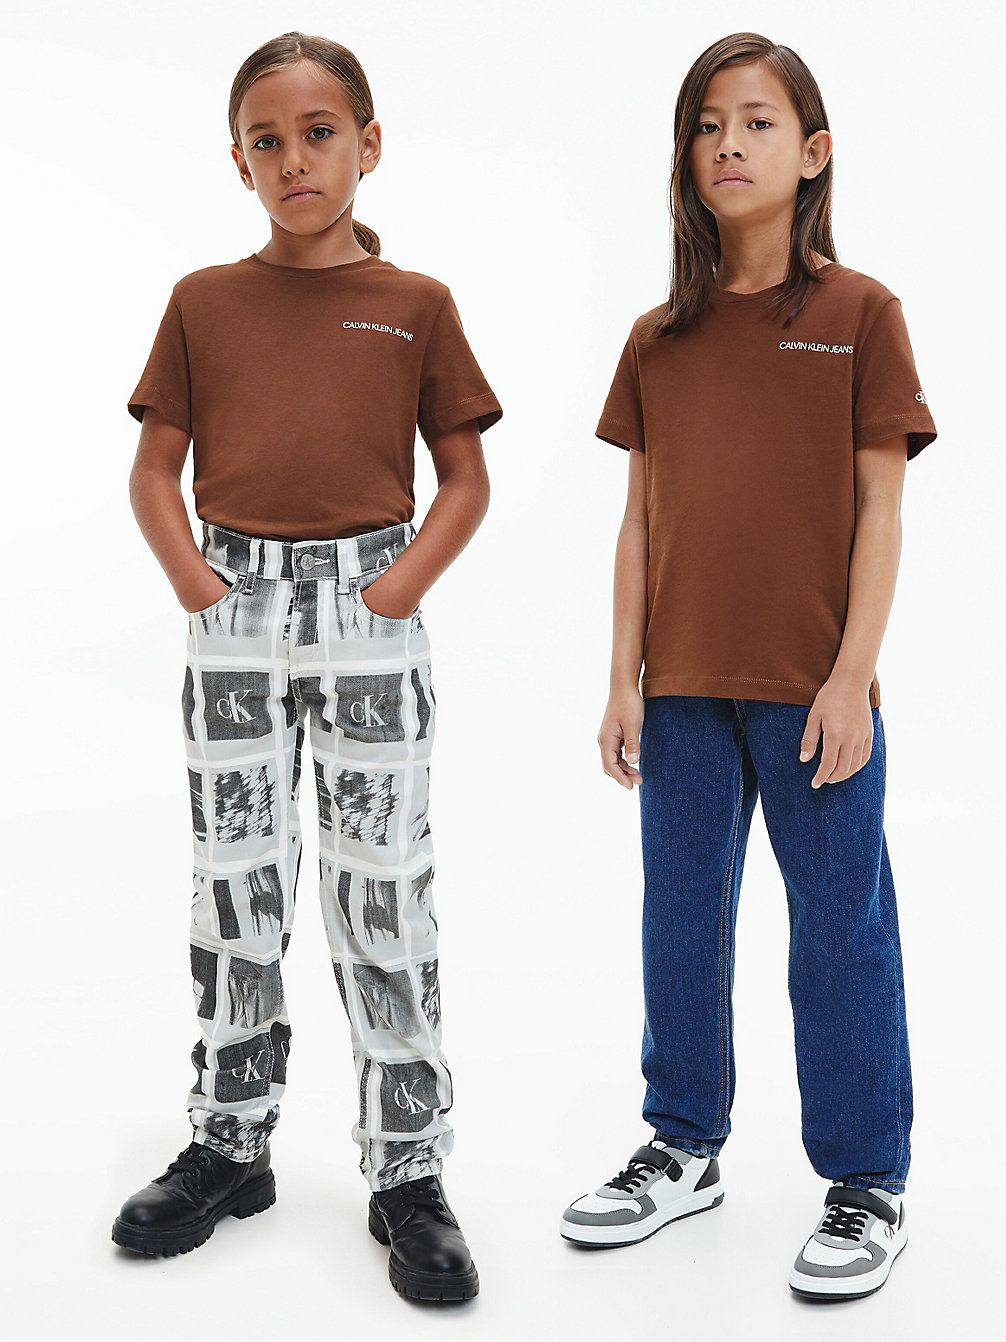 MILK CHOCOLATE Unisex Organic Cotton T-Shirt undefined kids unisex Calvin Klein